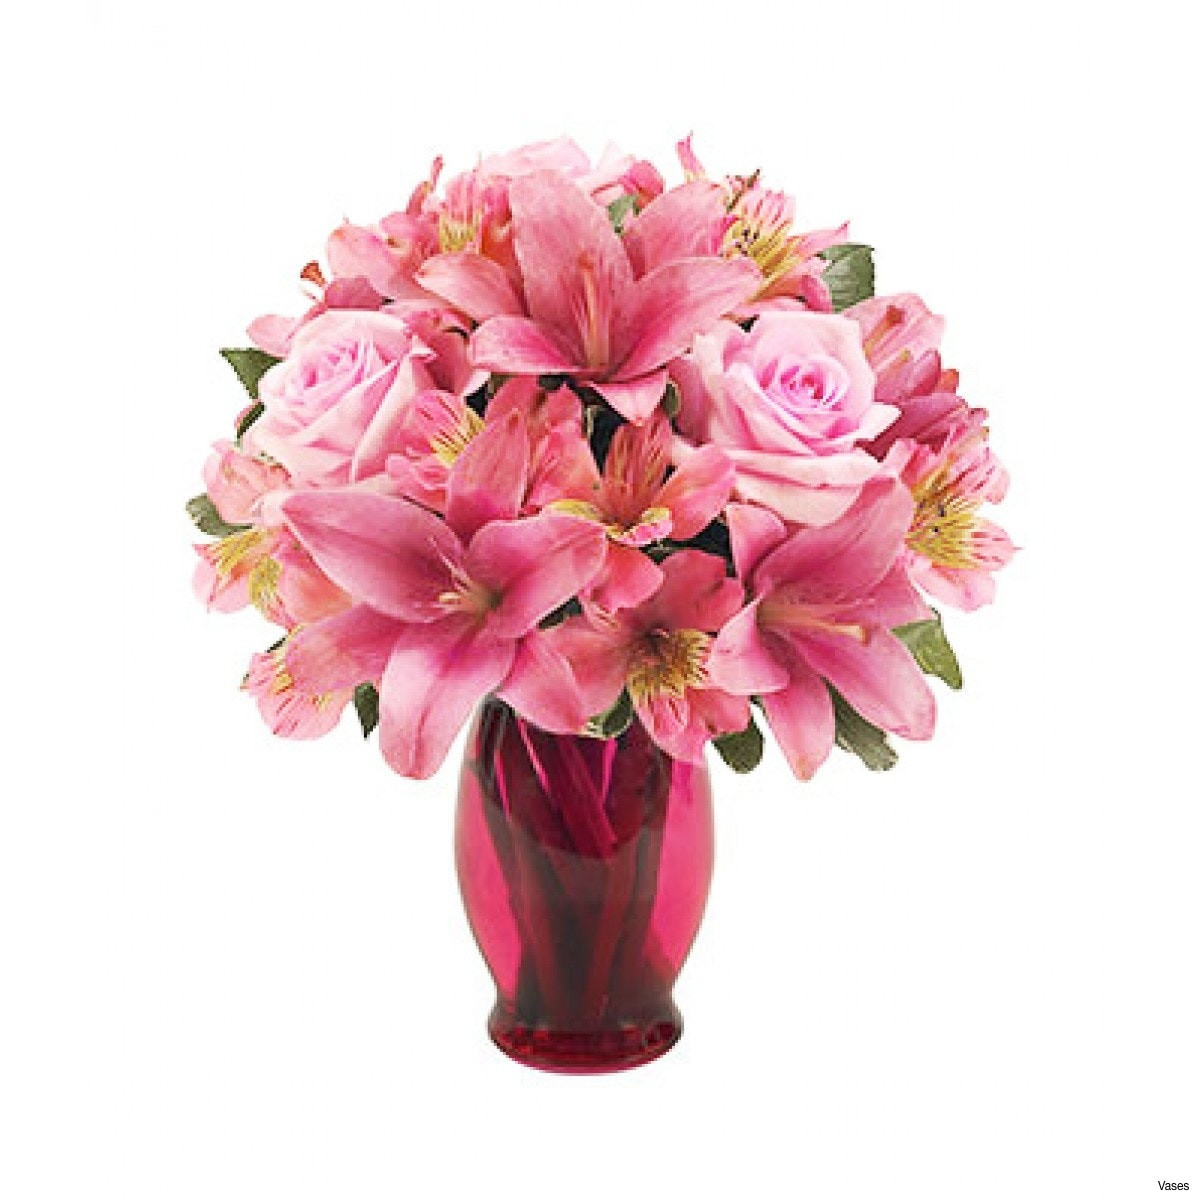 27 Popular Pink Ceramic Vase 2024 free download pink ceramic vase of elegant flower picture for colouring pets nature wallpaper within bf142 11km 1200x1200h vases pink flower vase i 0d